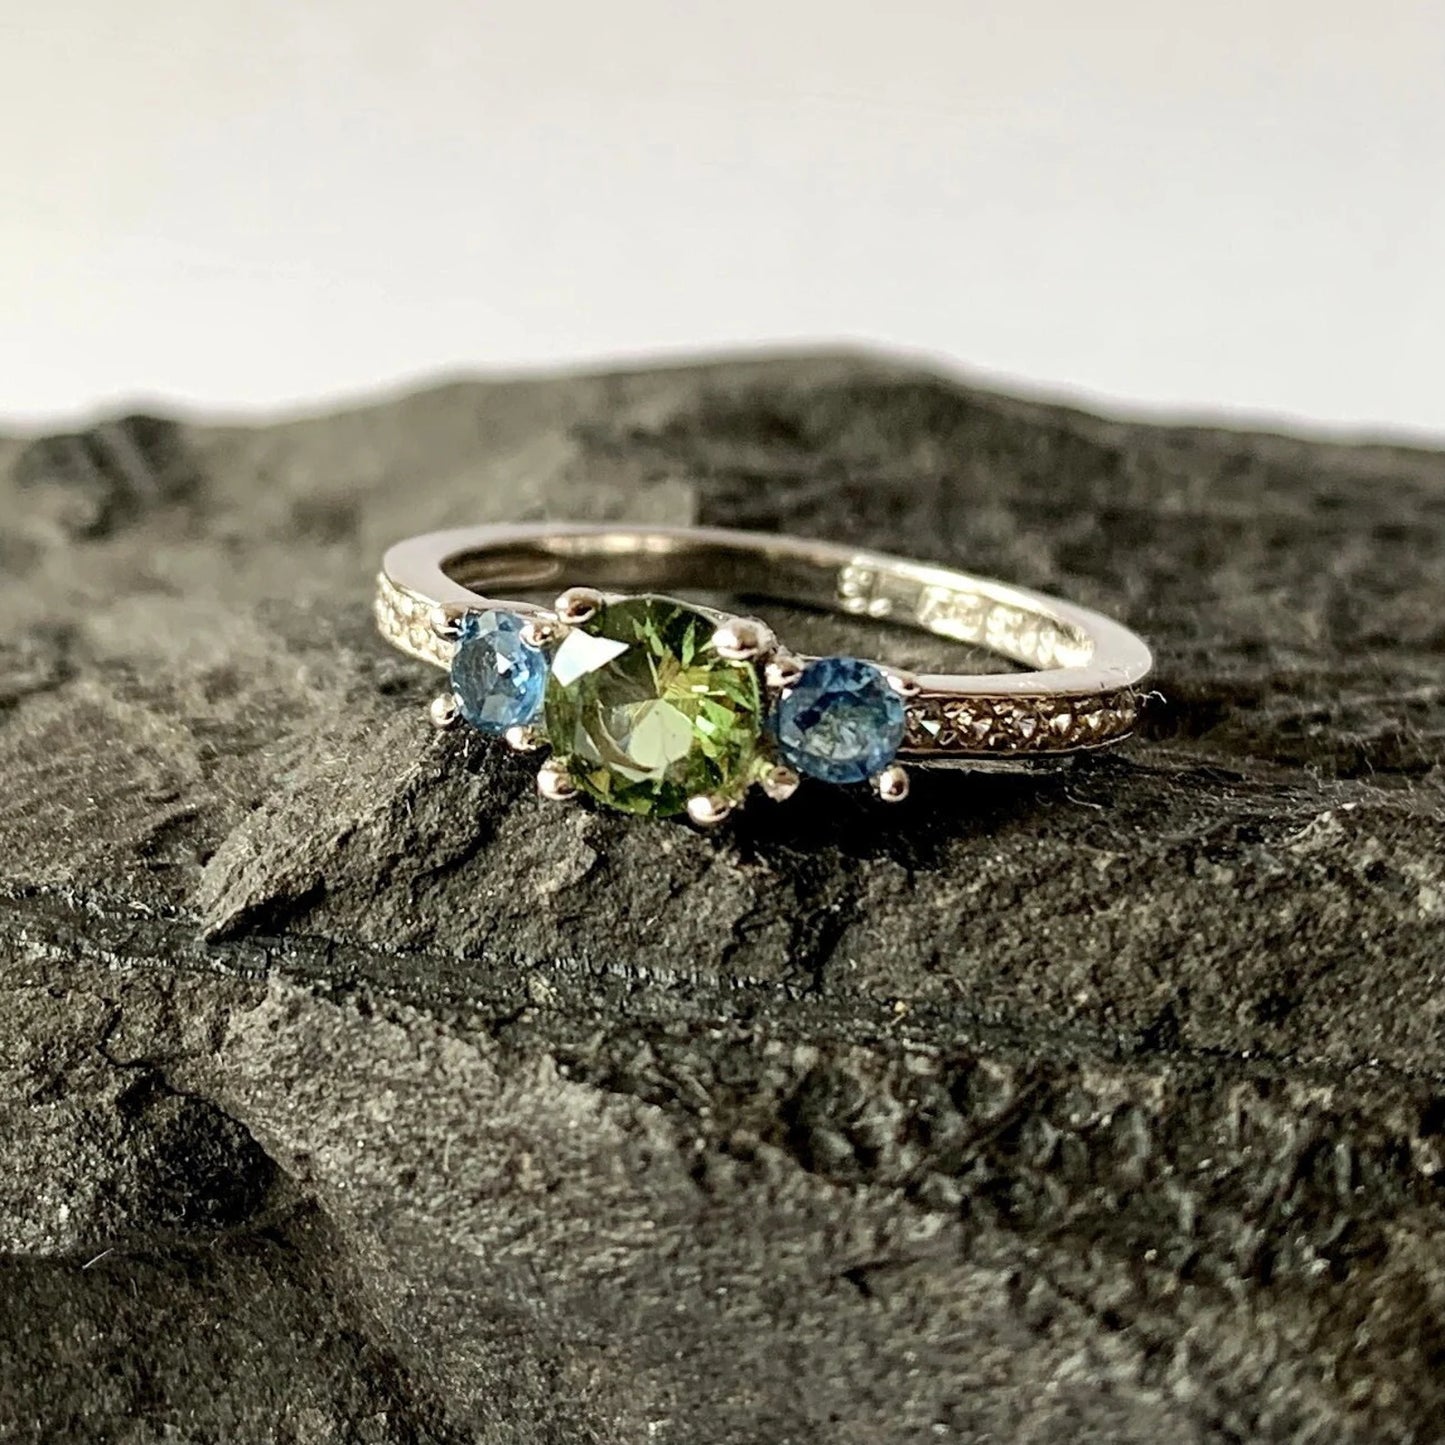 CZECH MOLDAVITE+ 2 blue Sapphire ring, Sterling silver Moldavite ring and Natural Sapphire gemstone, genuine moldavite ring with certificate